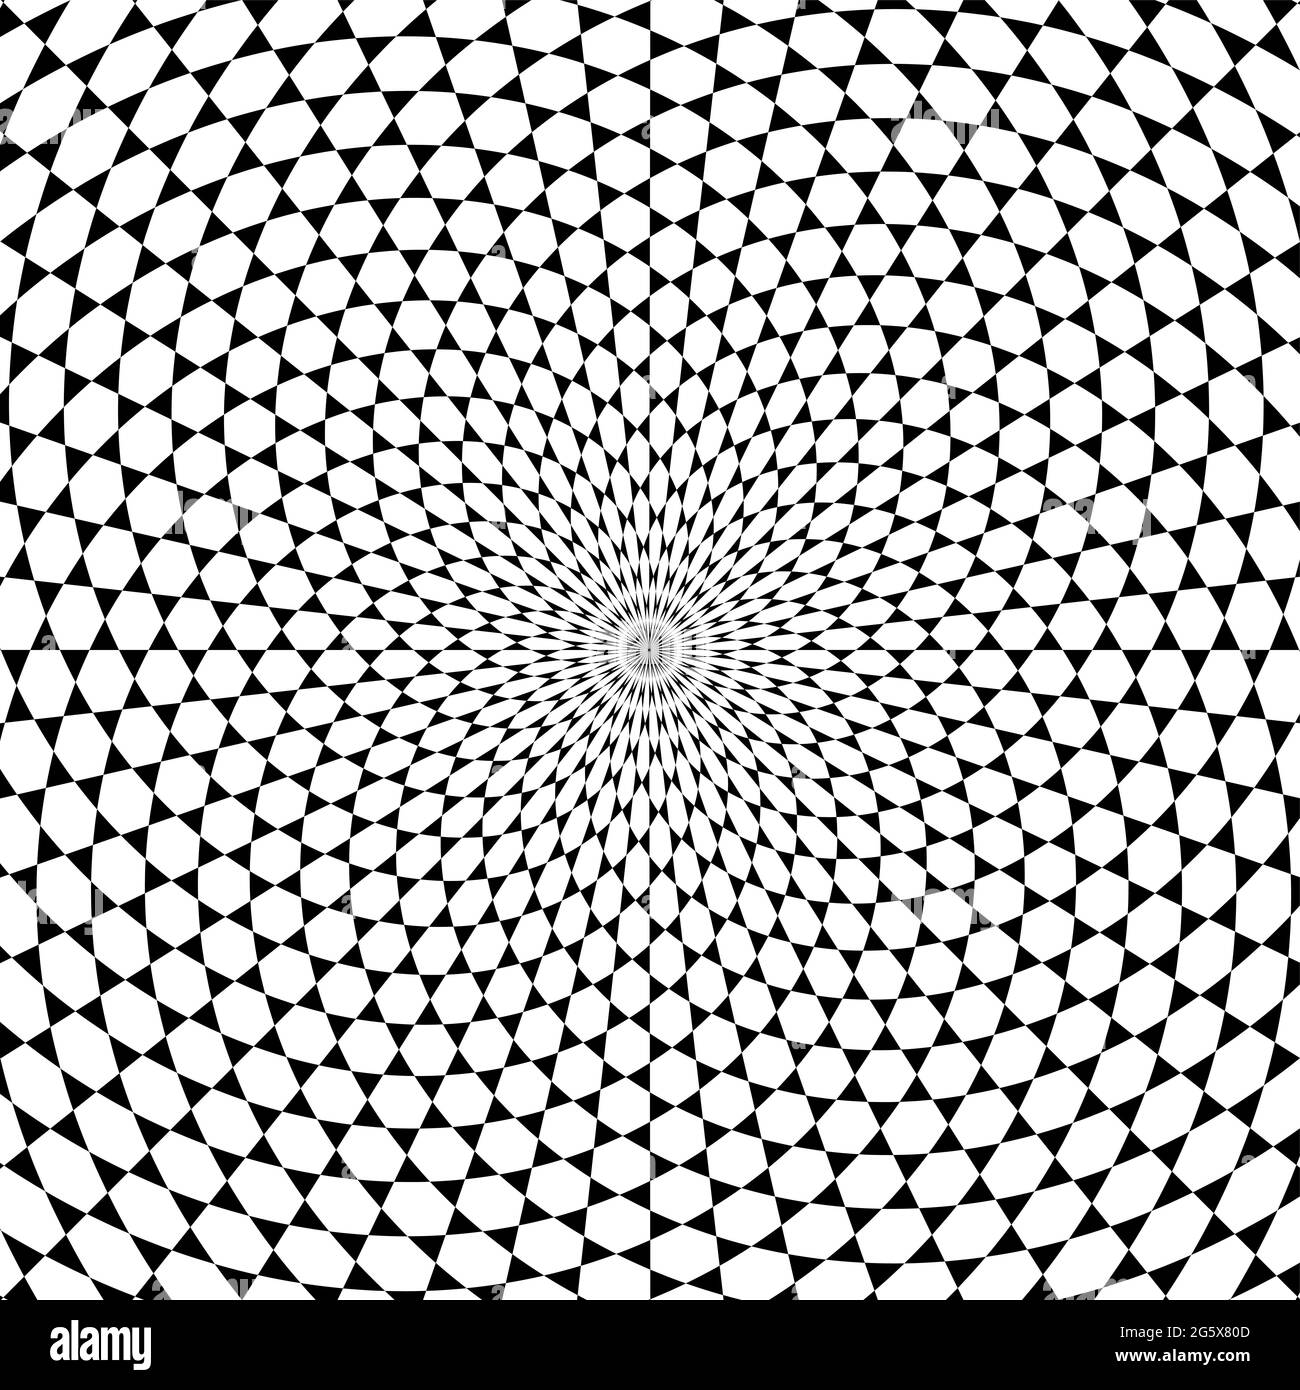 Fond en spirale avec motif étoile de David. Hexagones blancs entourés de triangles noirs, développés en spirale du centre vers l'extérieur. Banque D'Images